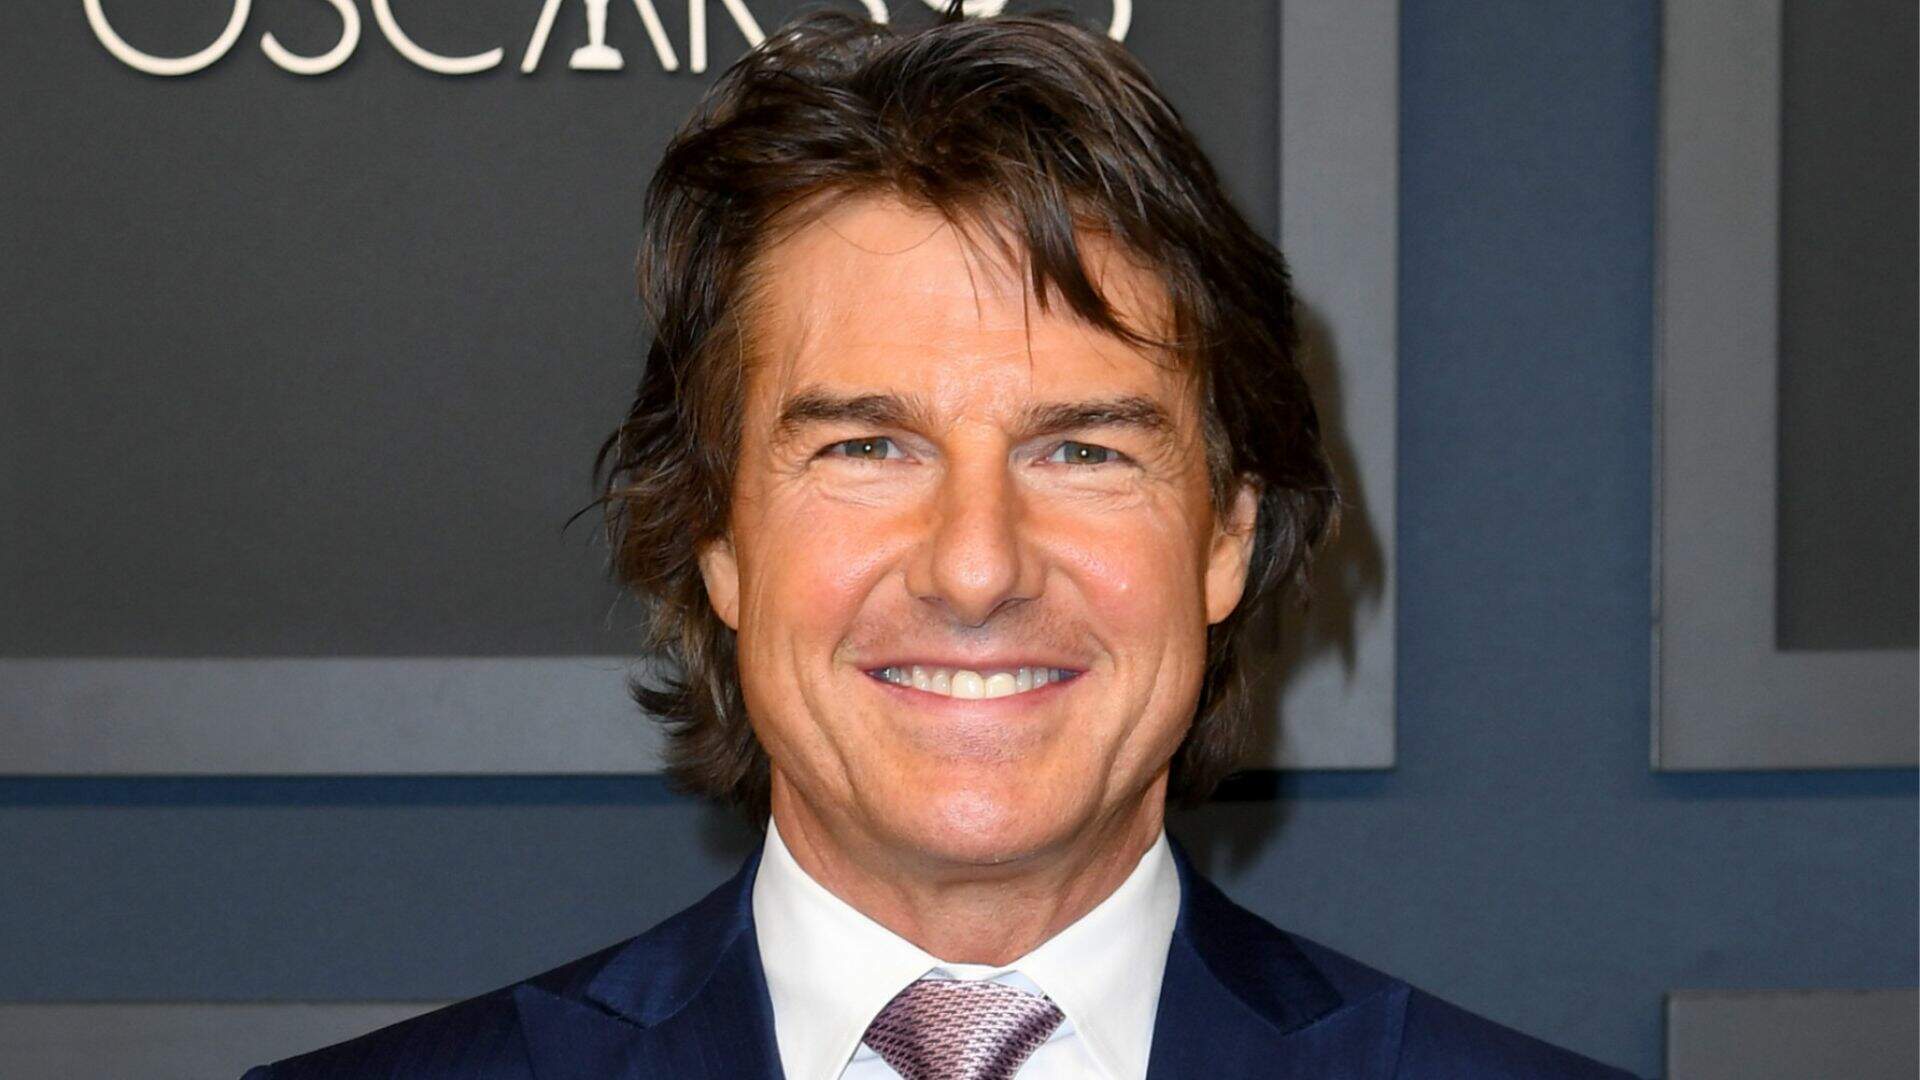 Missão Impossível: Em entrevista ao Brasil, Tom Cruise revela segredos por trás do roteiro do filme - Metropolitana FM